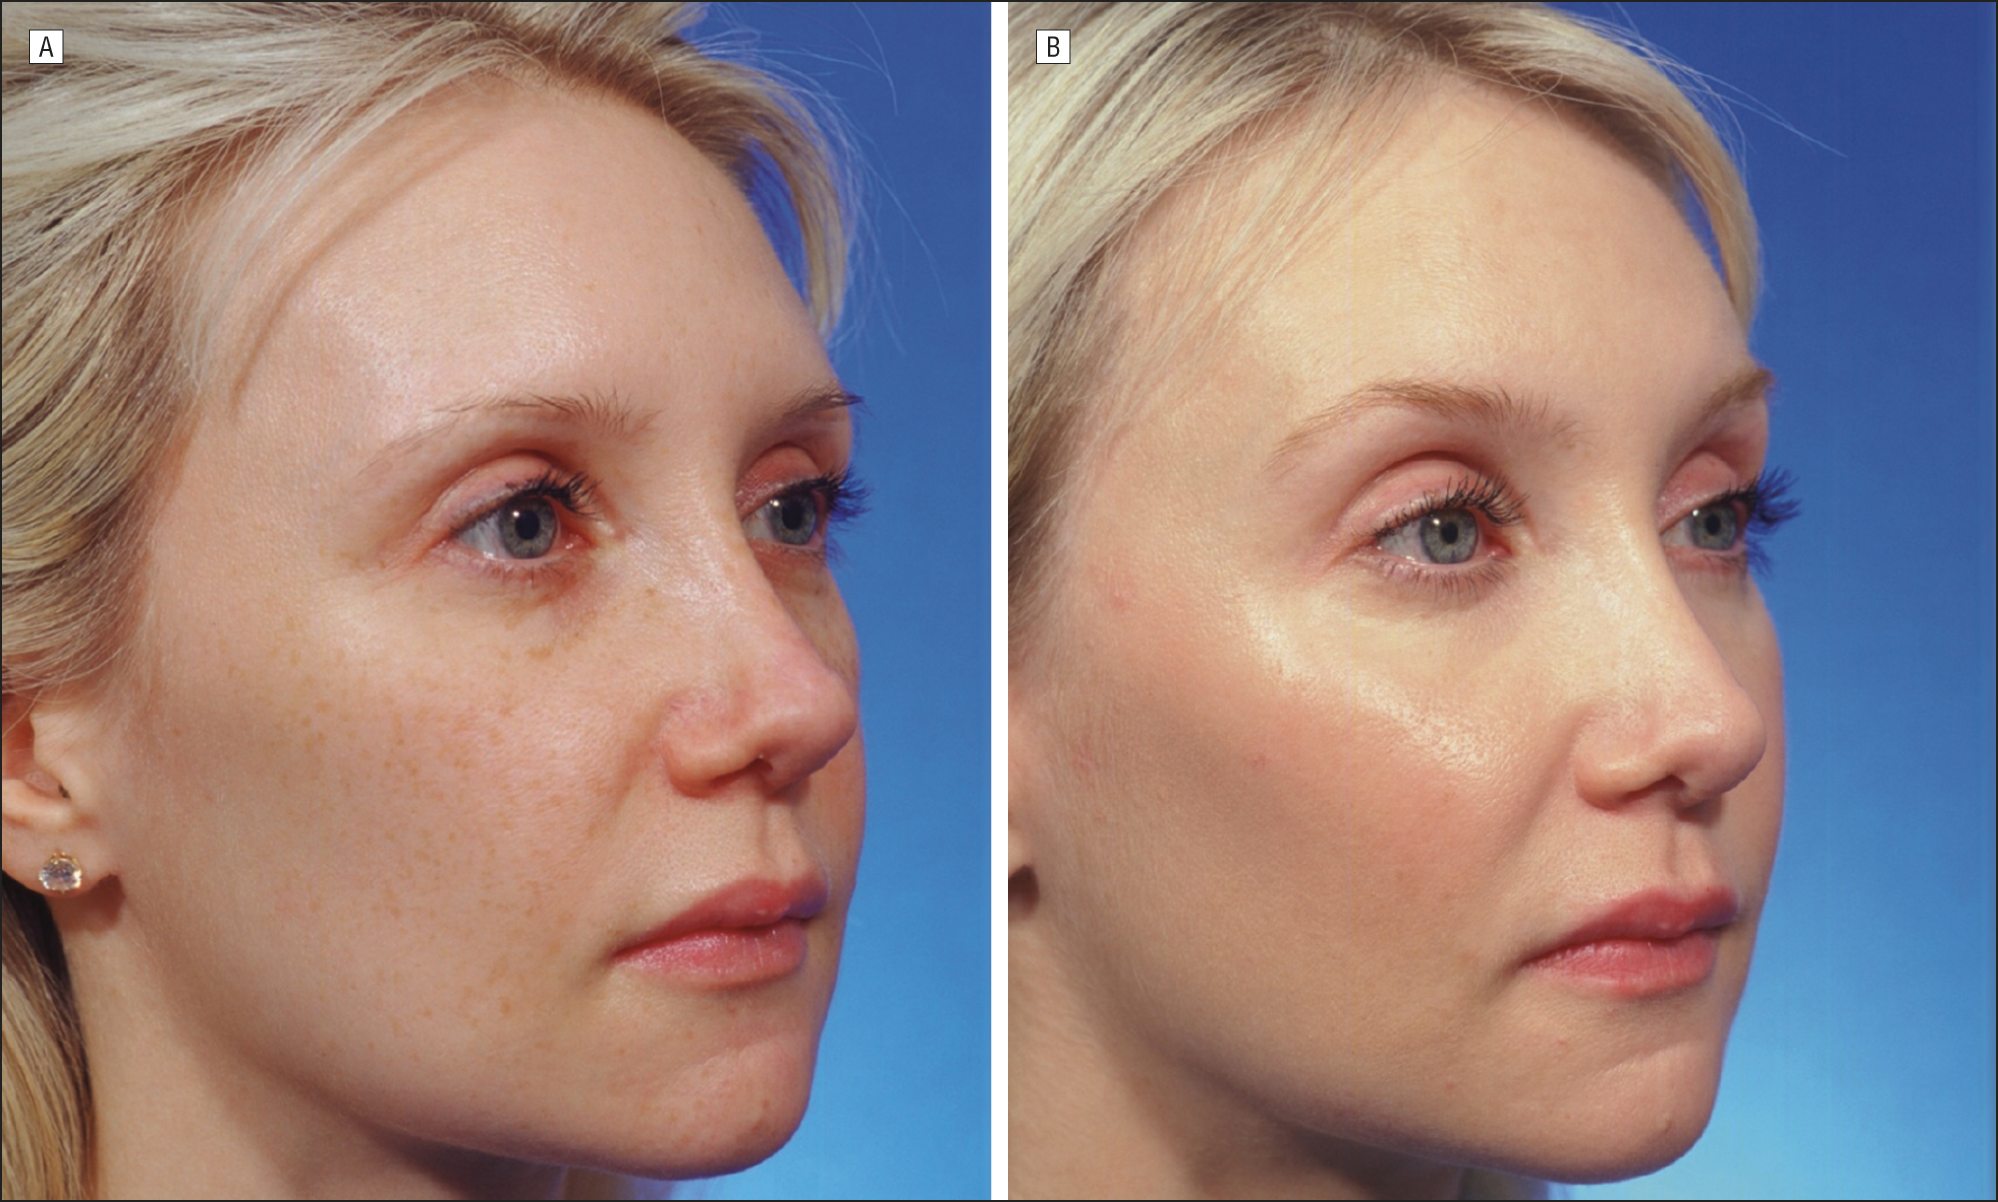 Facial laser procedure